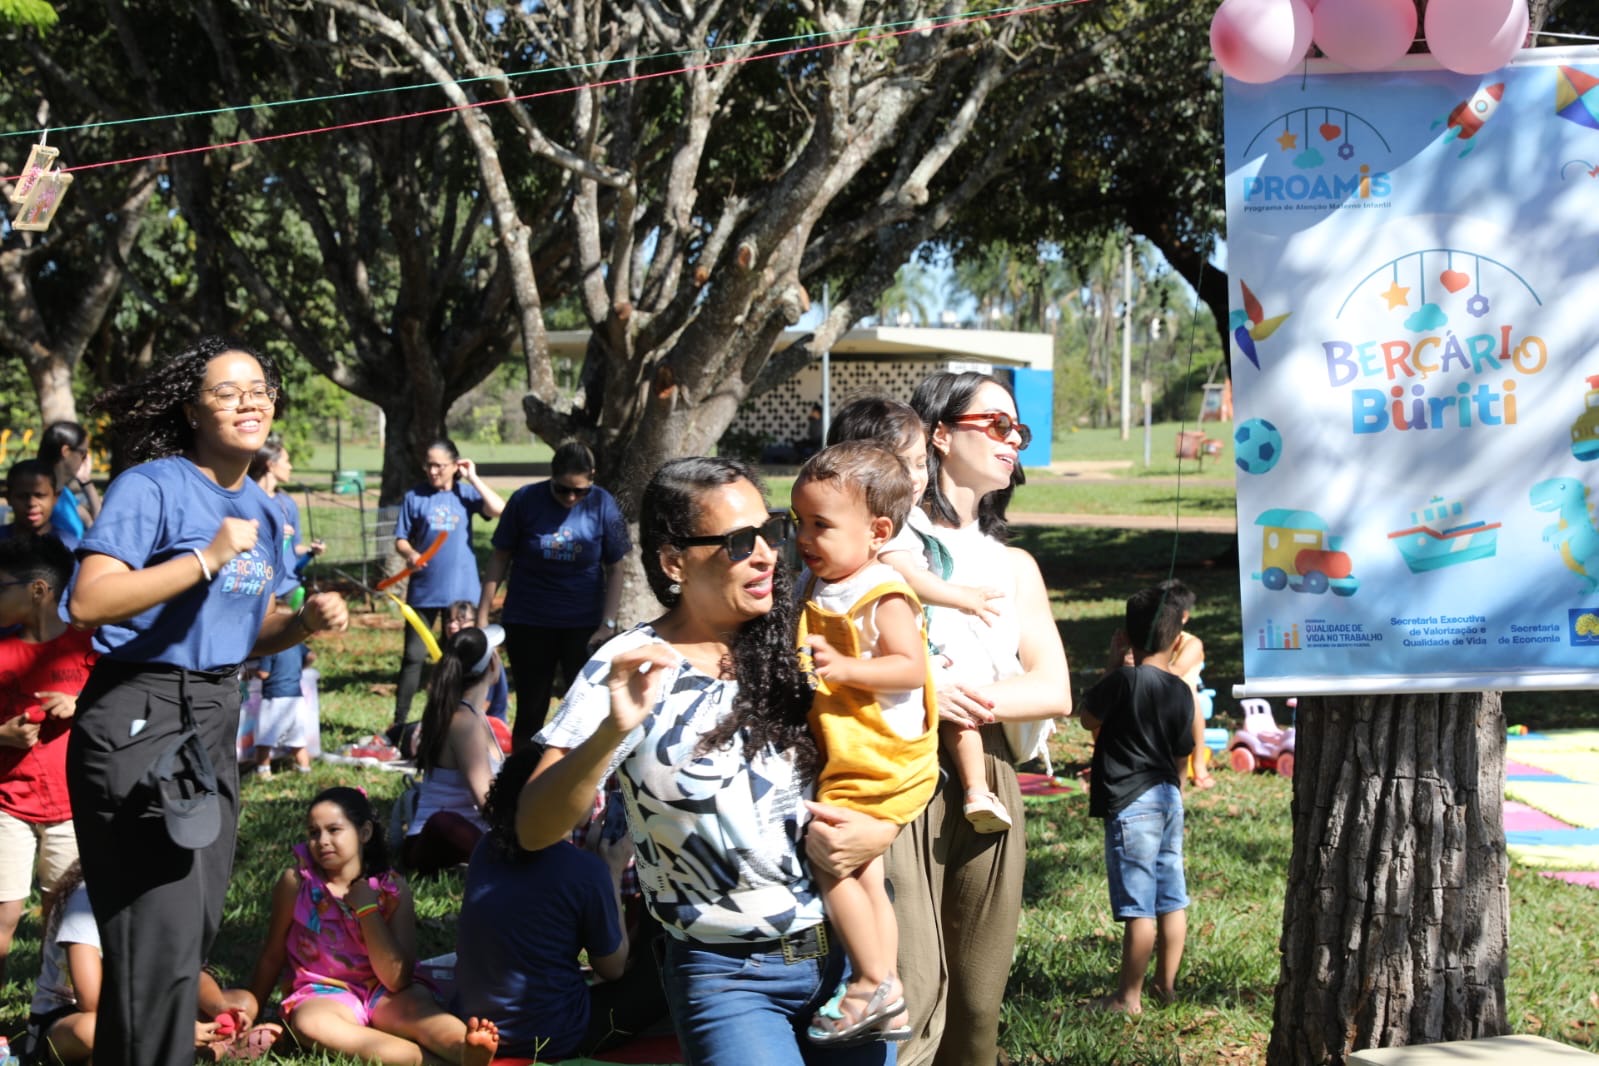 Berçário Buriti promove festa da família no Parque da Cidade